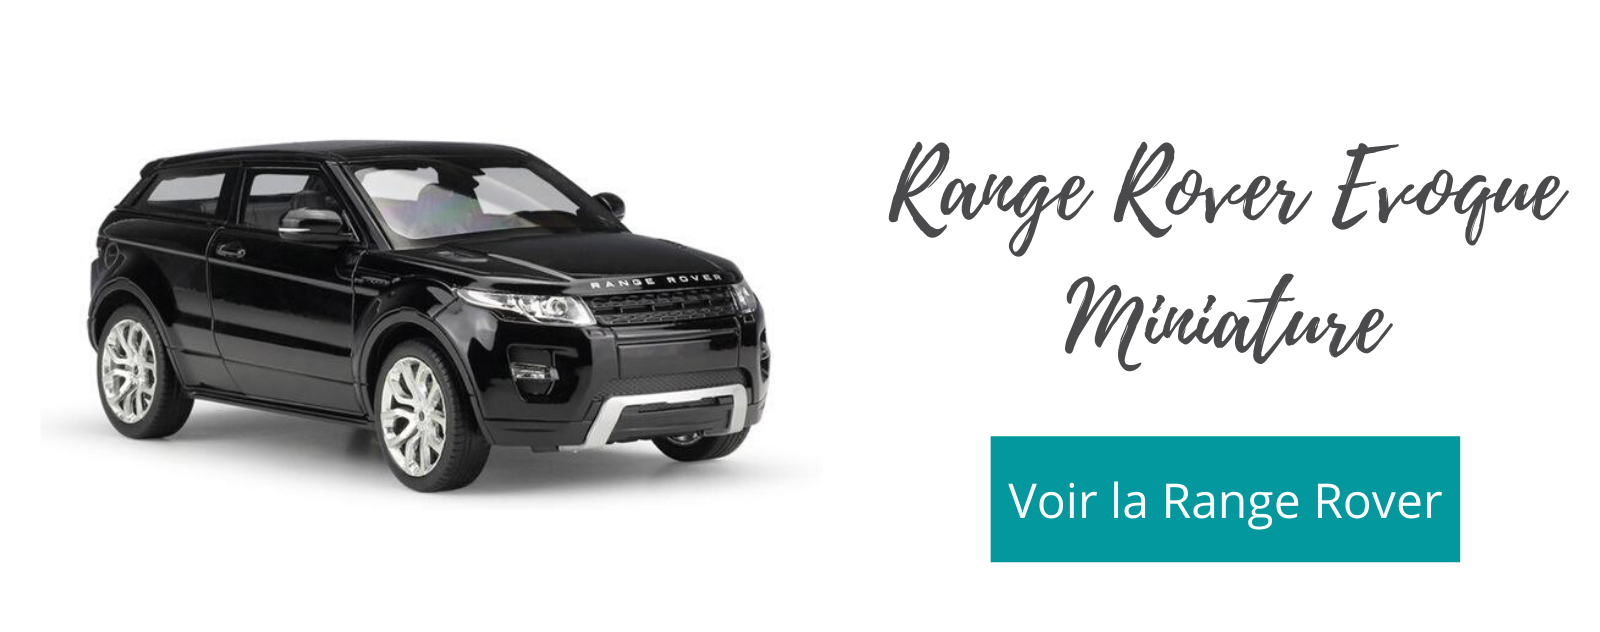 Range Rover Evoque Miniature